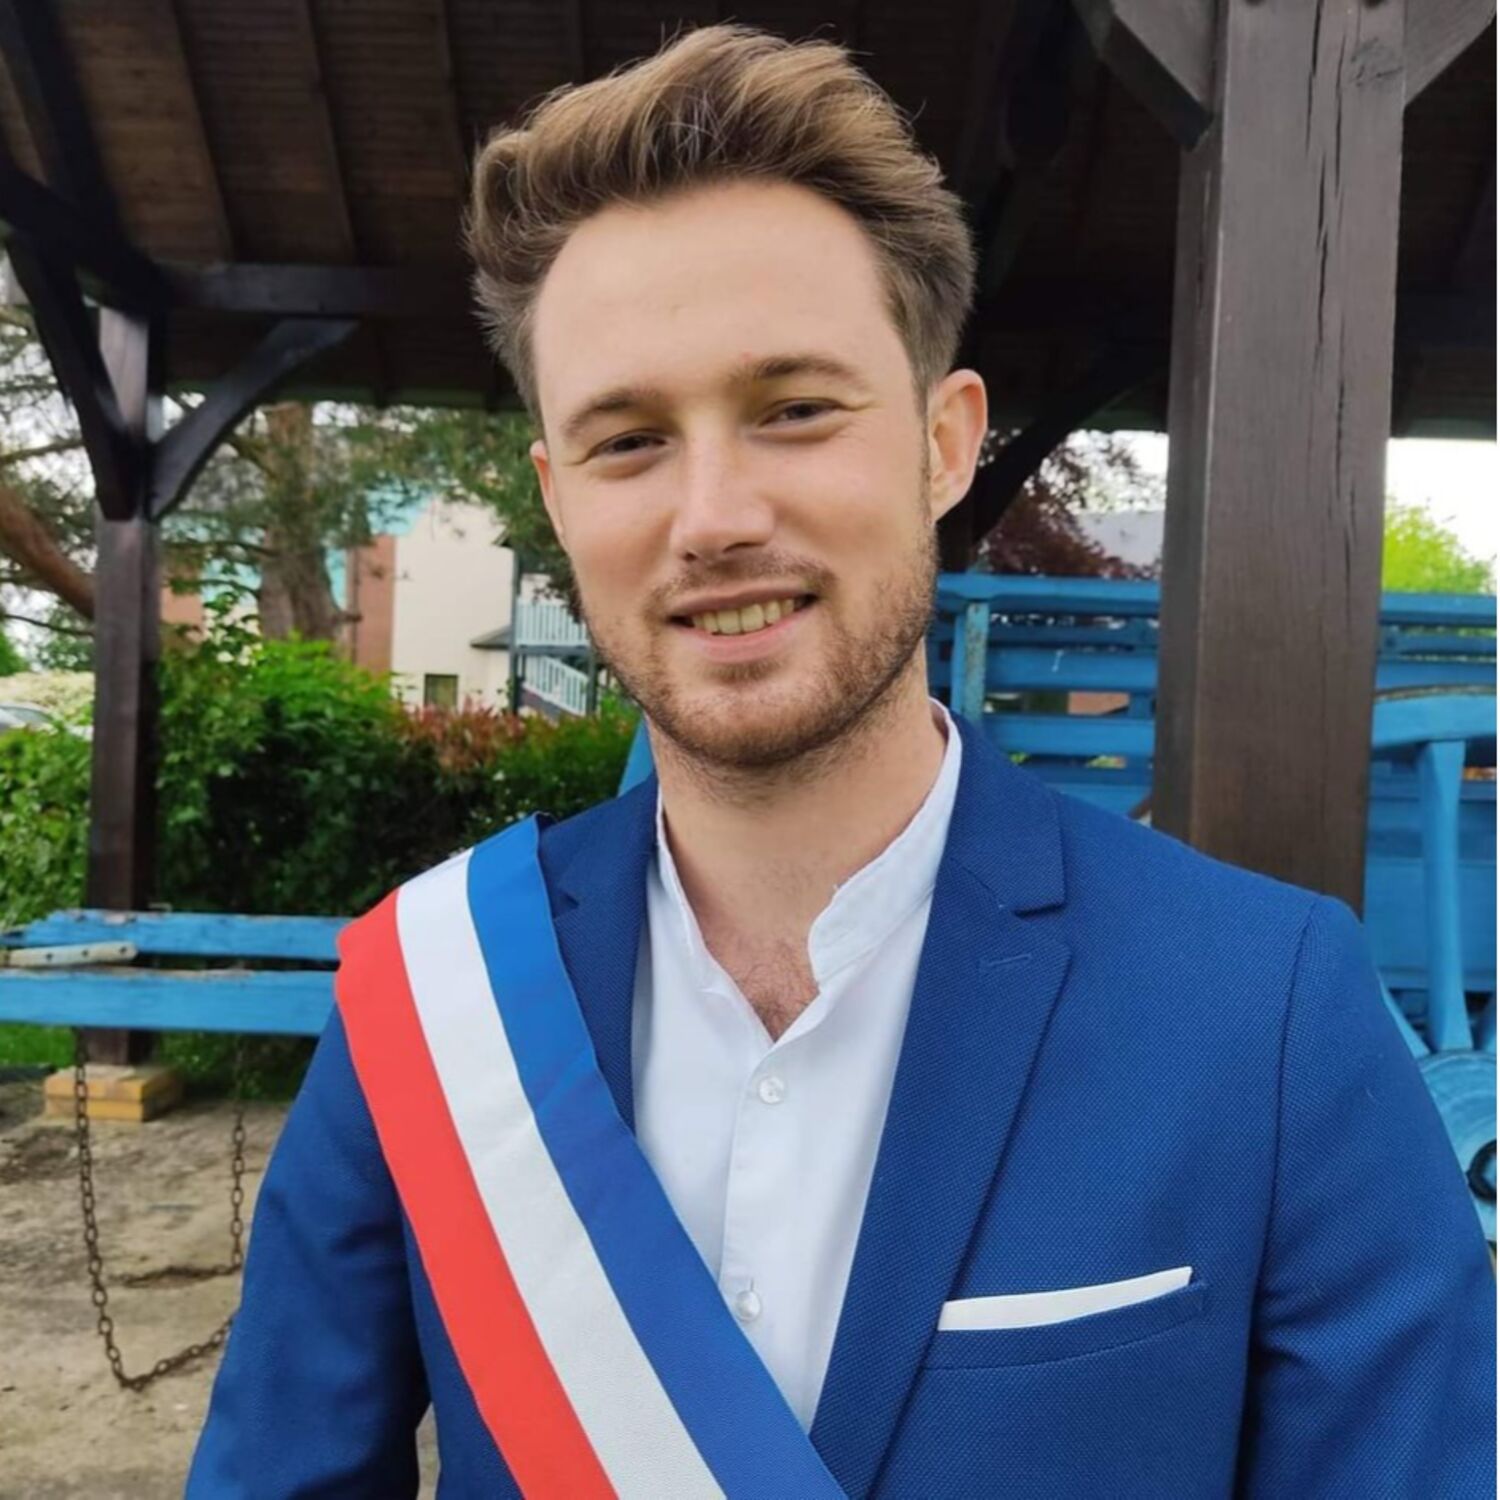 Association des jeunes élus de France : Baptiste Dias Ferreira, nouveau délégué régional en Normandi